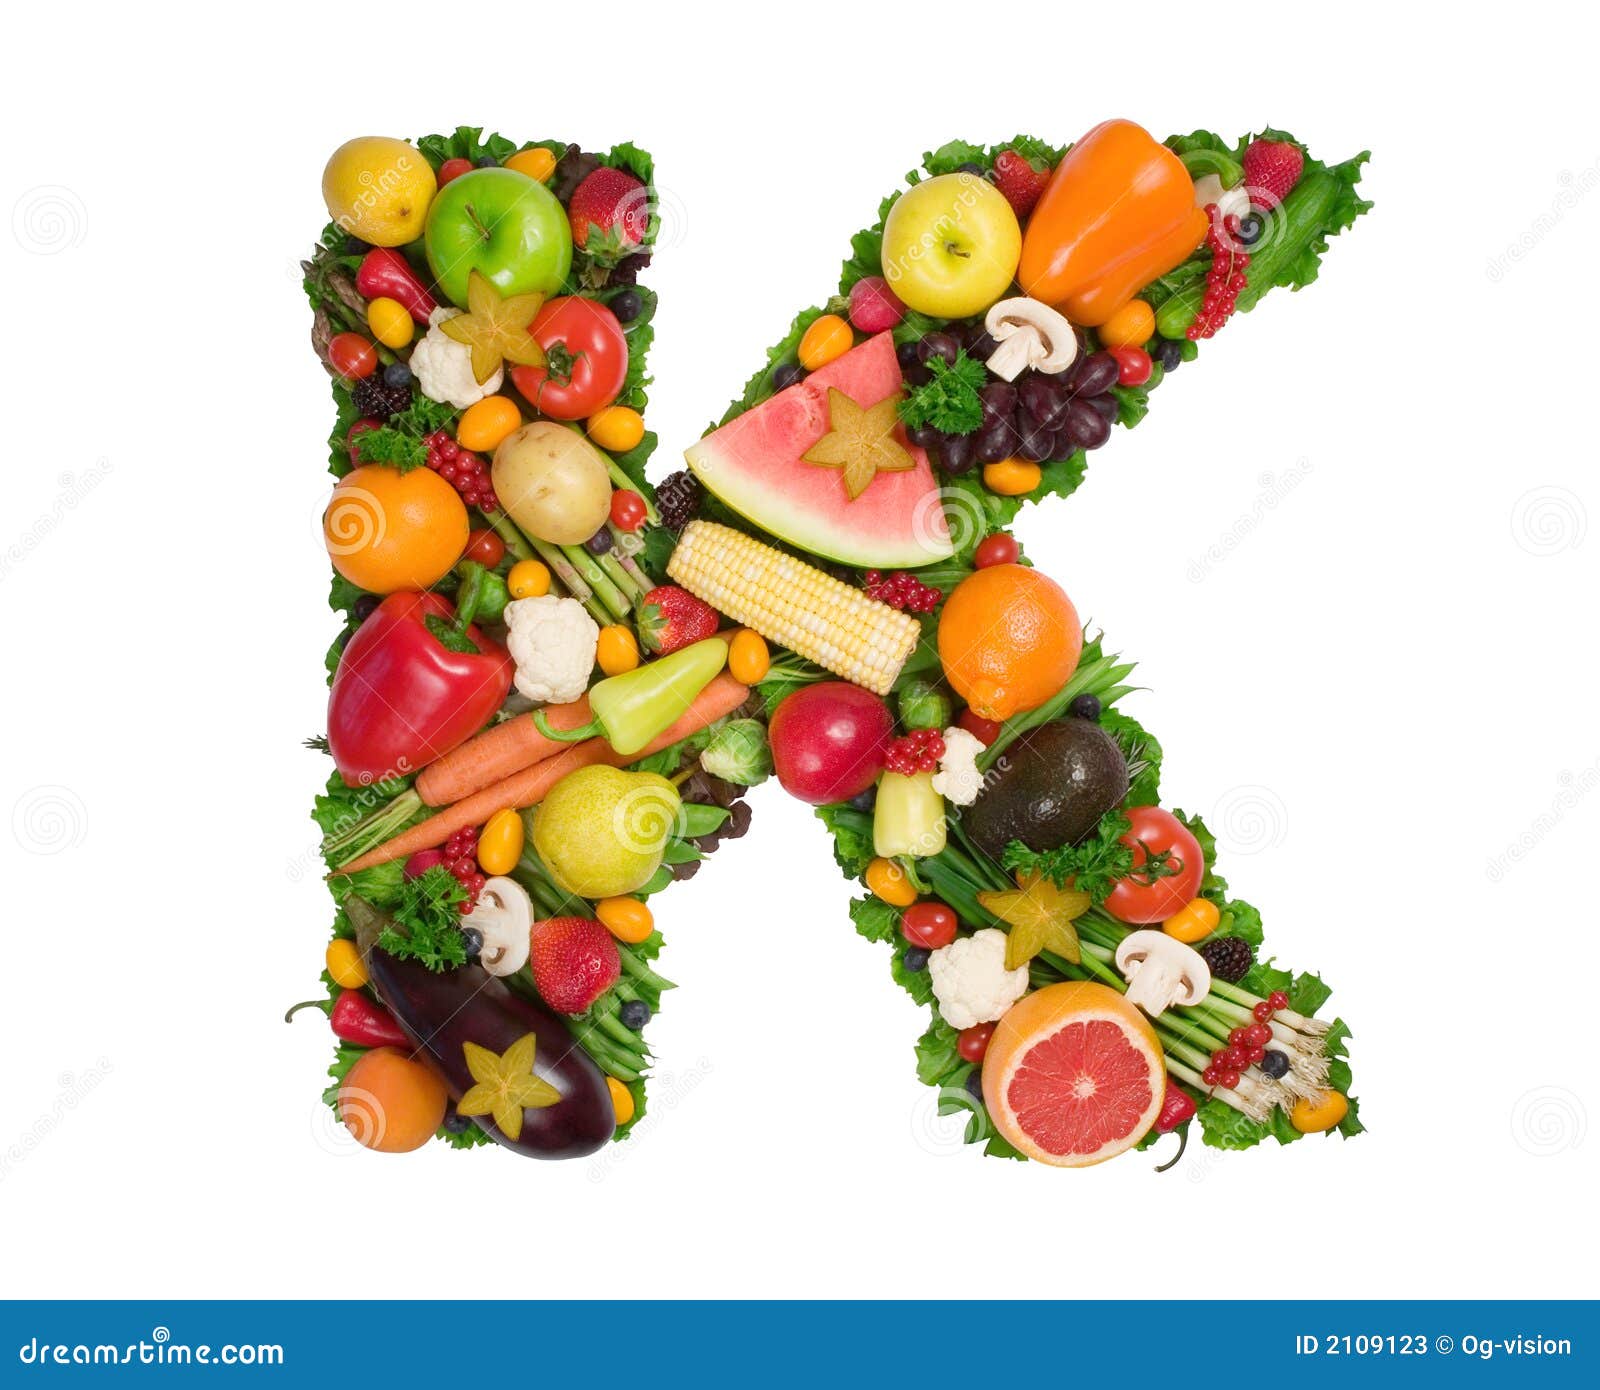 Витамин k продукты. Что такое витамины. Витамин k. Витамины из фруктов. Витами из фруктов и овощей.